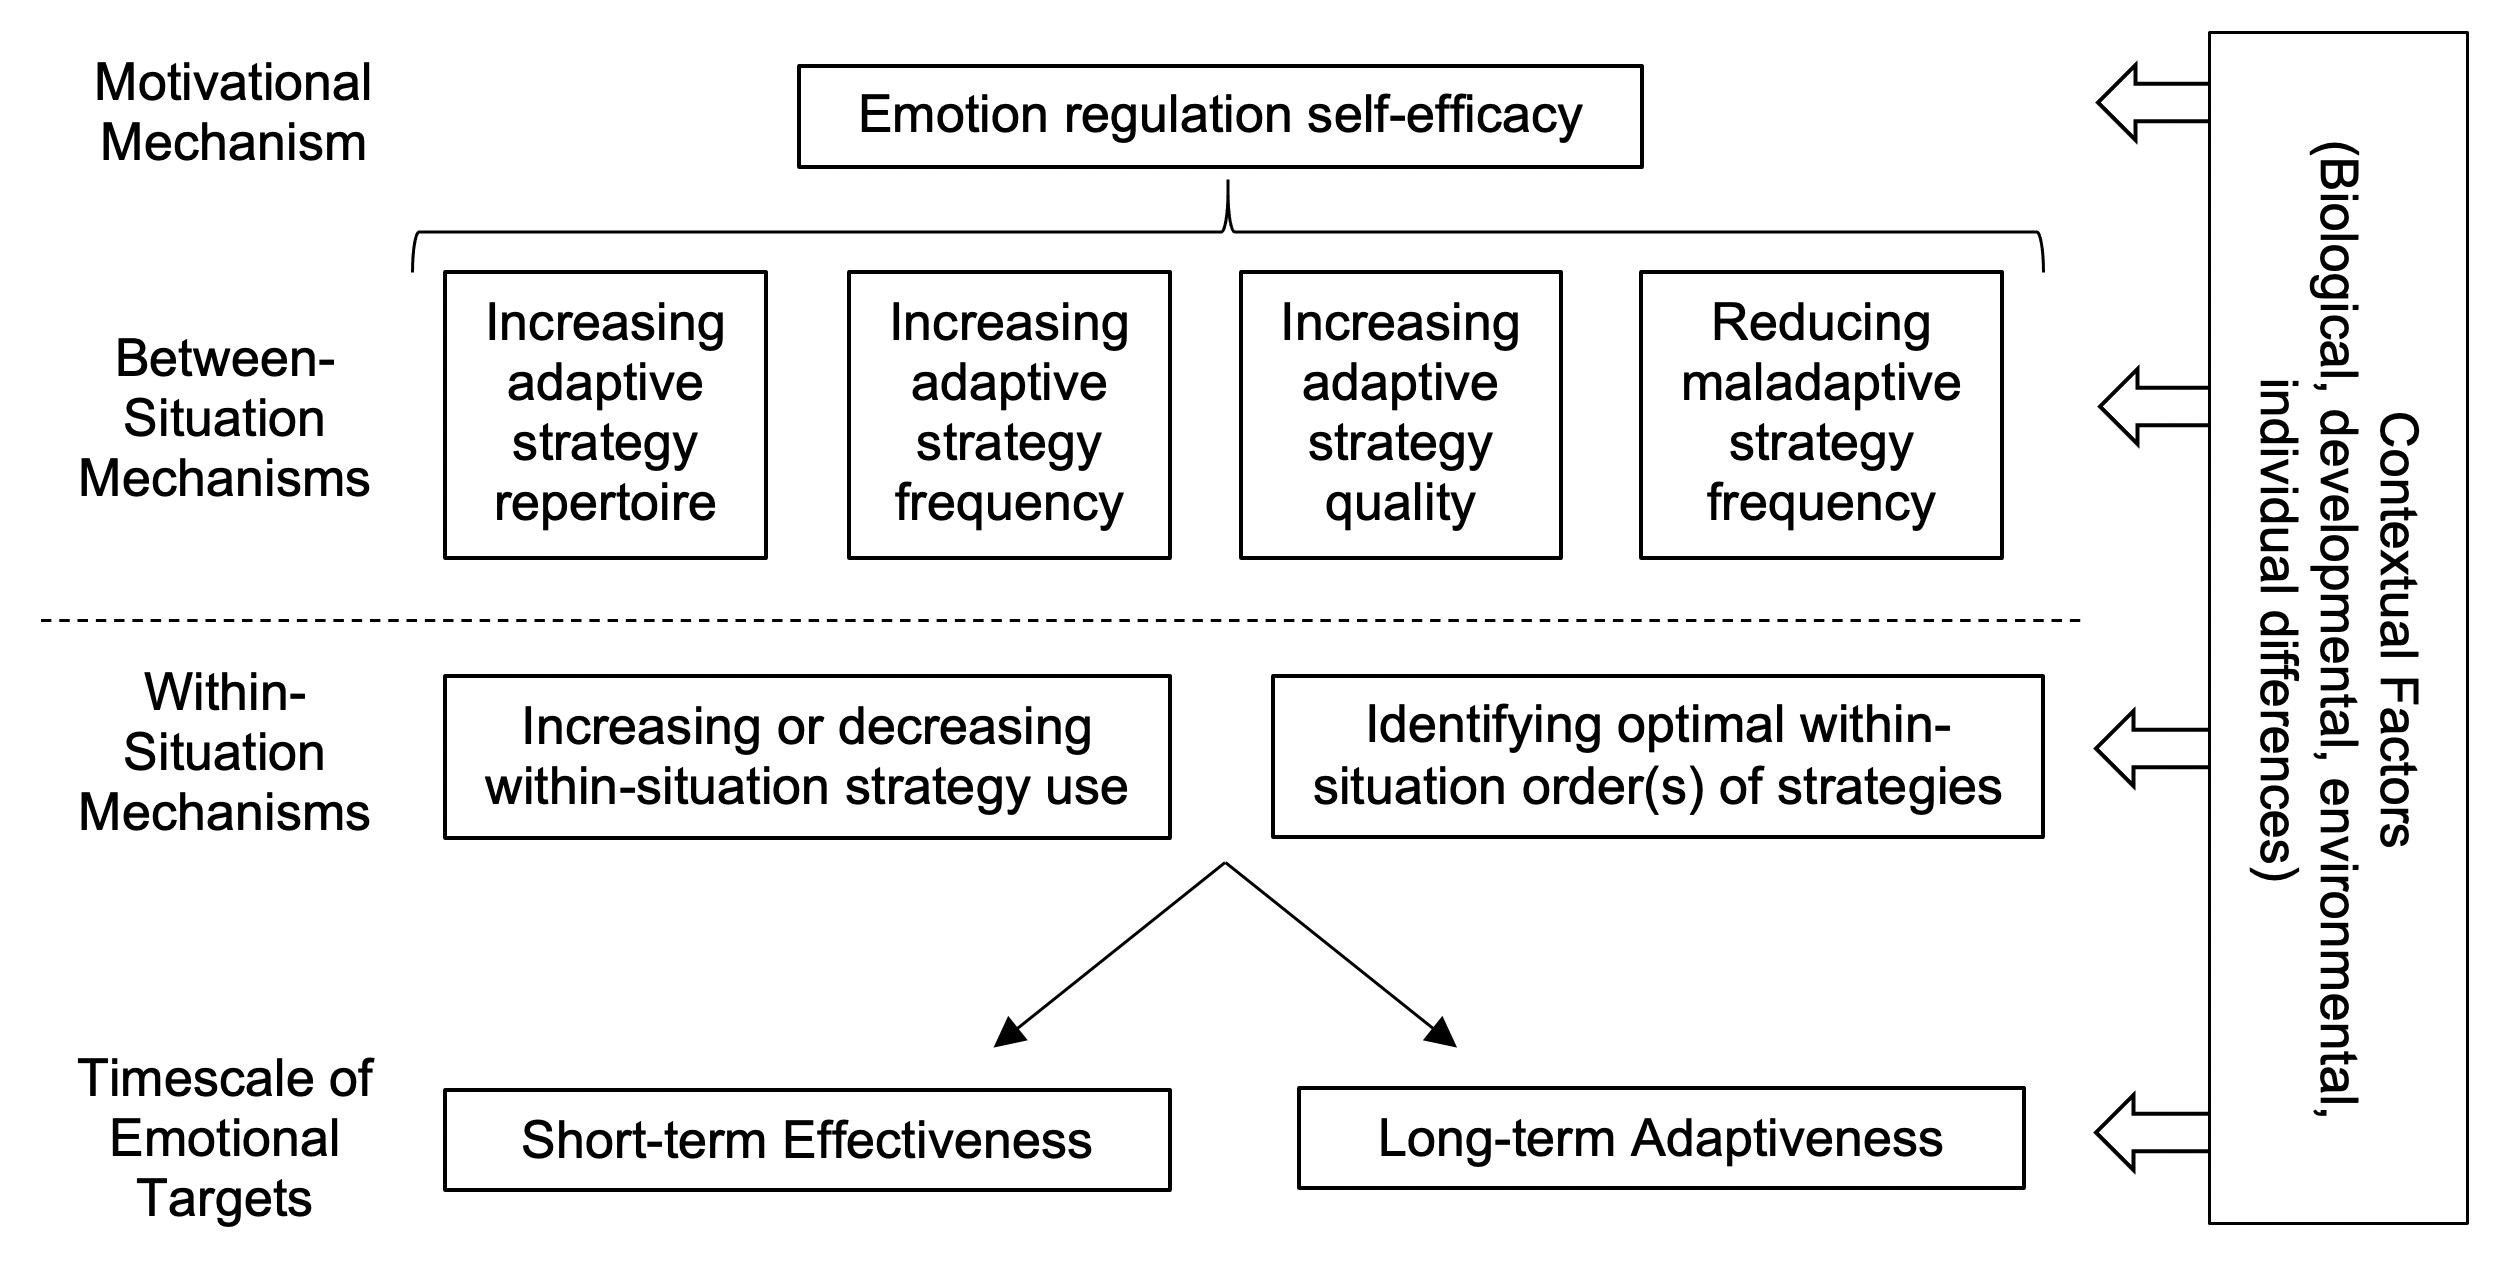 Emotion regulation techniques